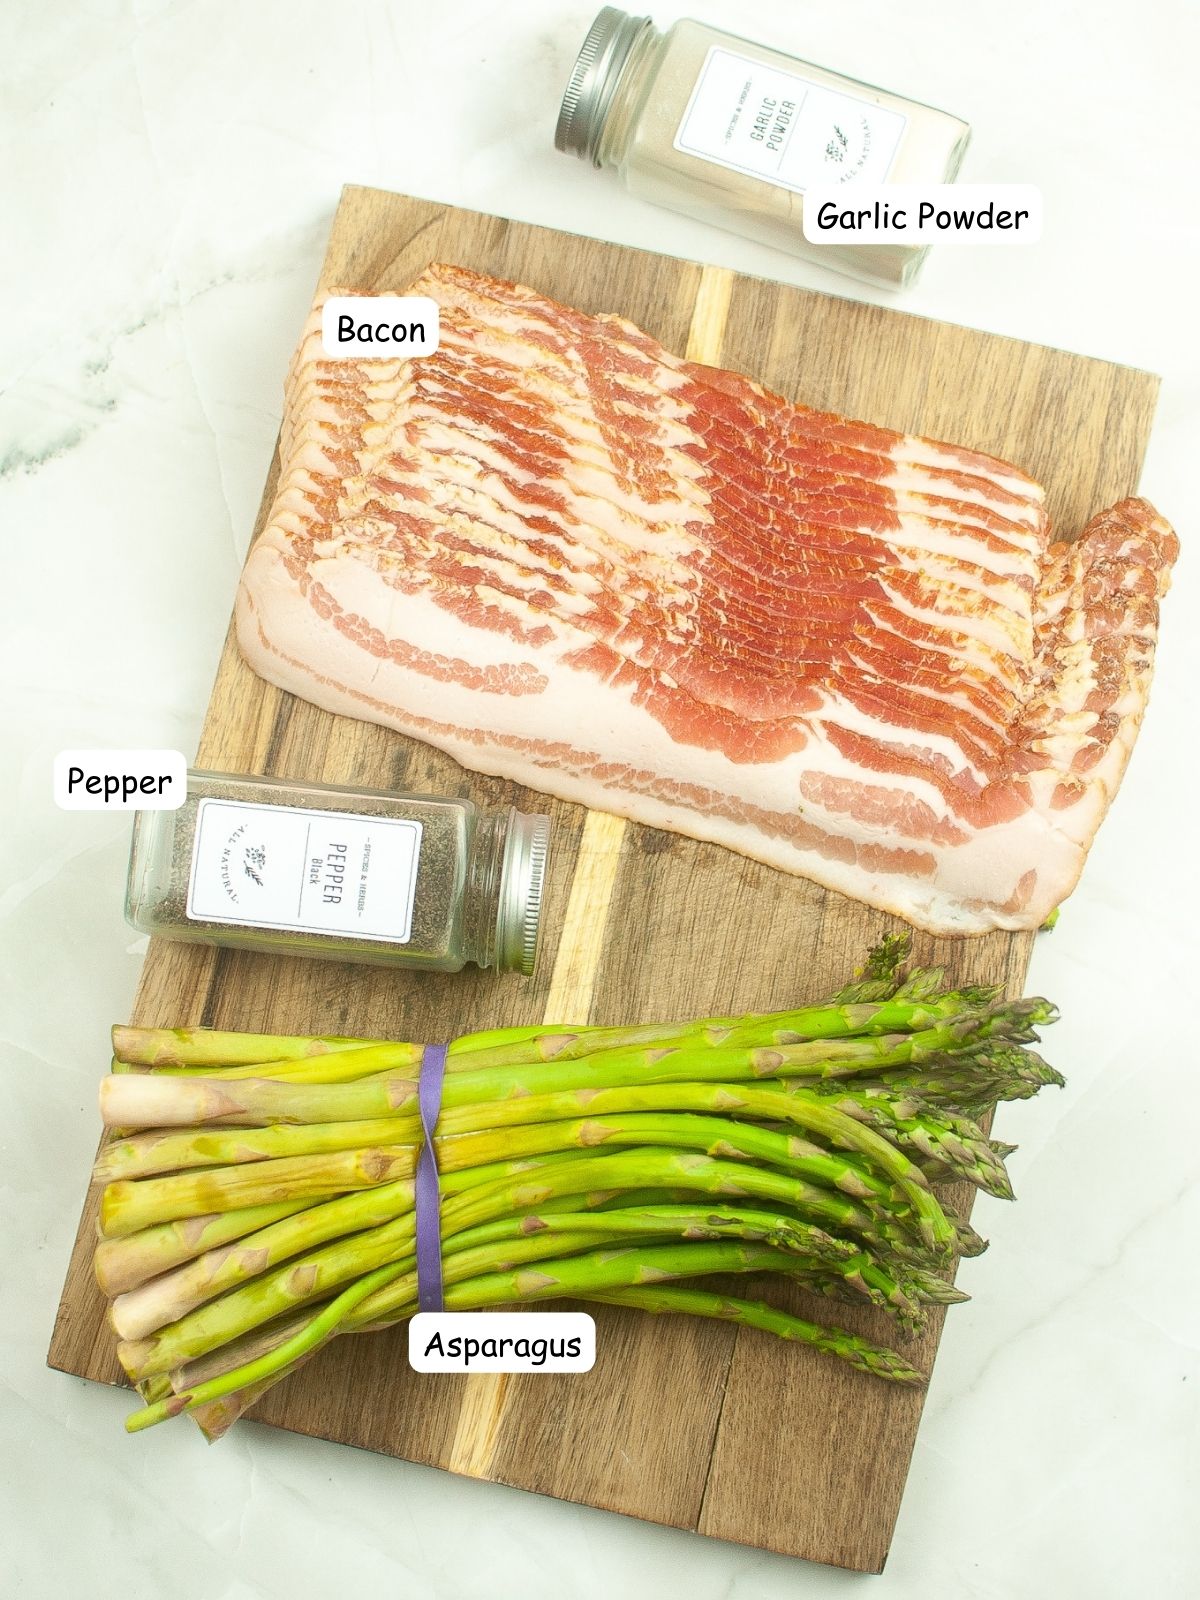 bacon, asparagus, pepper, garlic powder on cutting board.